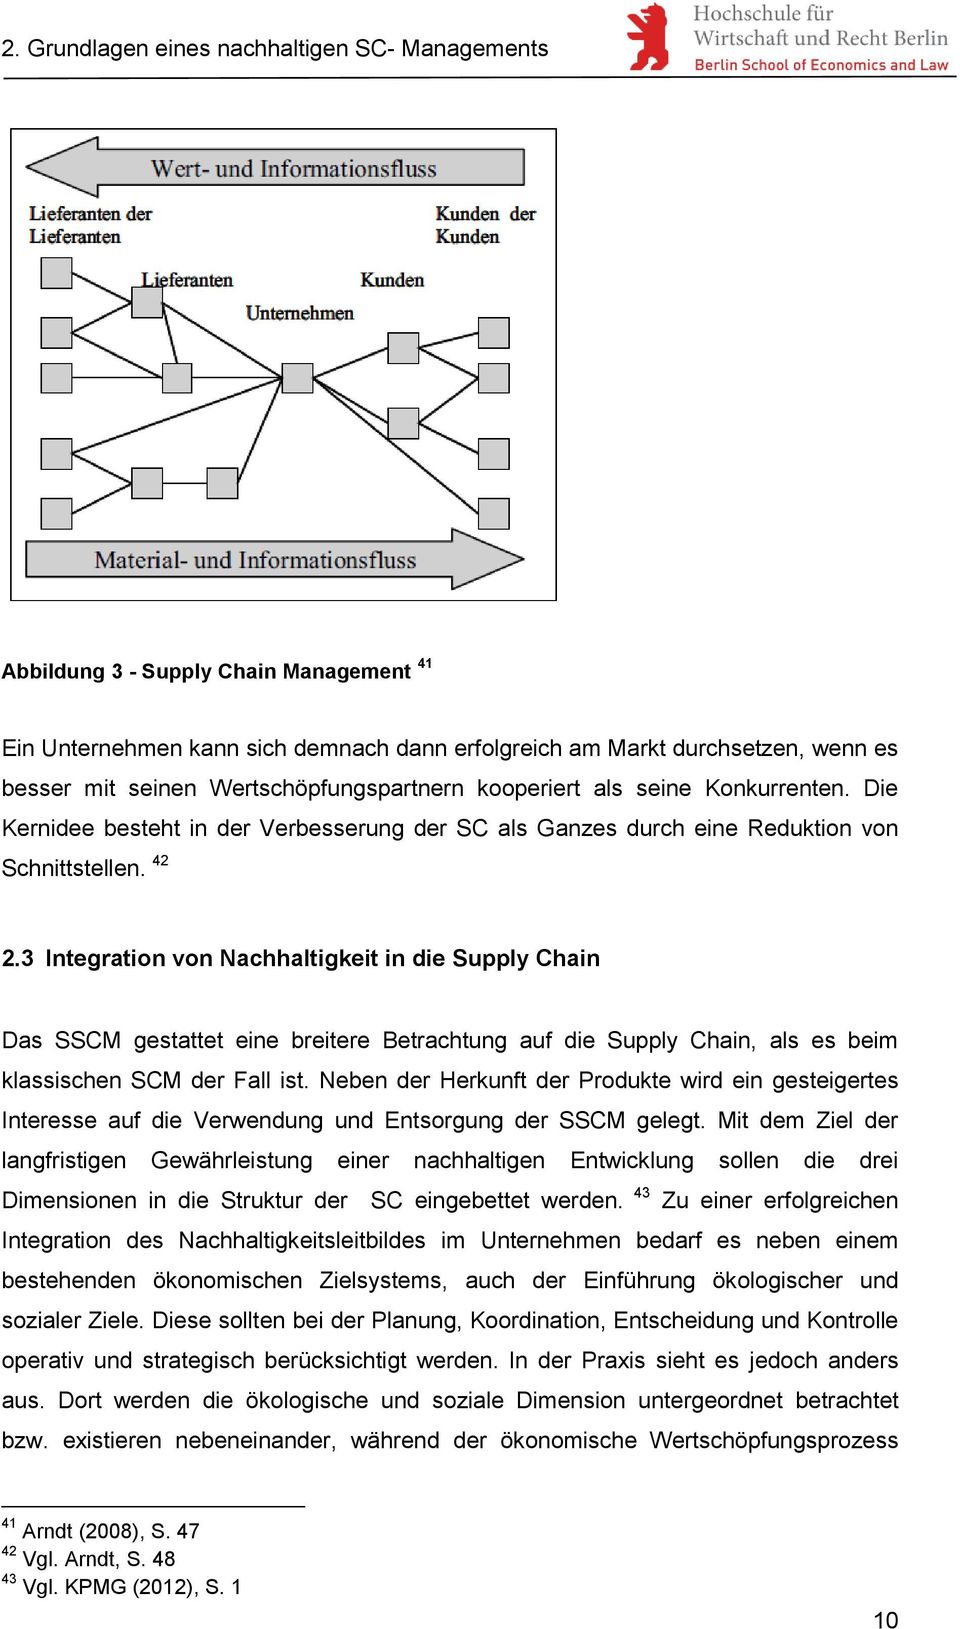 3 Integration von Nachhaltigkeit in die Supply Chain Das SSCM gestattet eine breitere Betrachtung auf die Supply Chain, als es beim klassischen SCM der Fall ist.